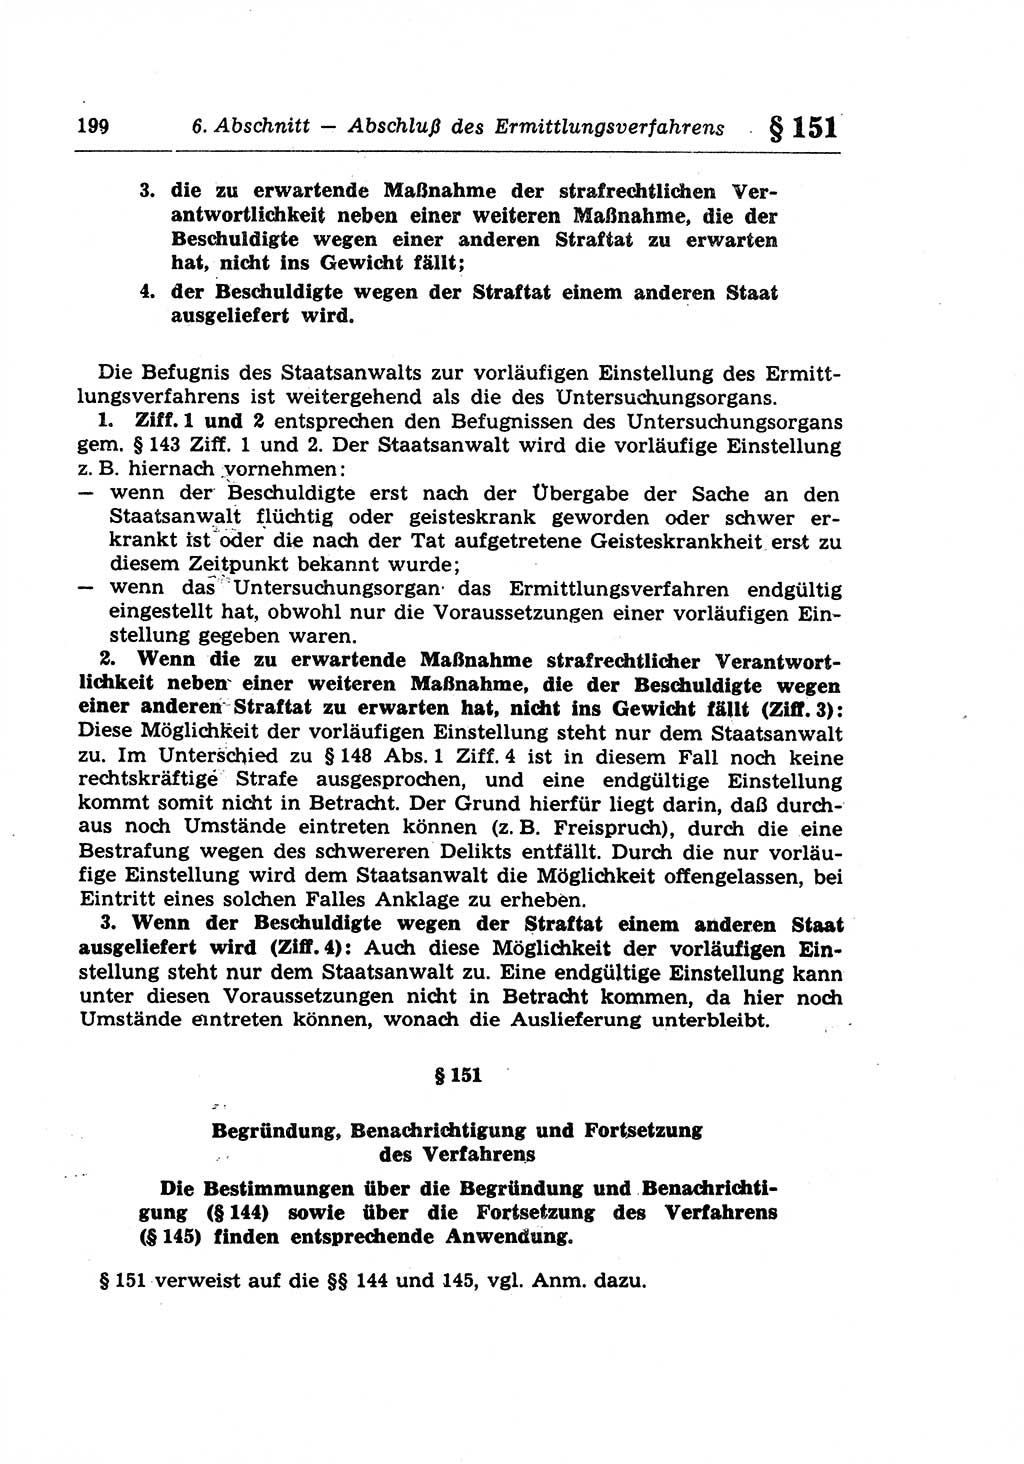 Strafprozeßrecht der DDR (Deutsche Demokratische Republik), Lehrkommentar zur Strafprozeßordnung (StPO) 1968, Seite 199 (Strafprozeßr. DDR Lehrkomm. StPO 19688, S. 199)